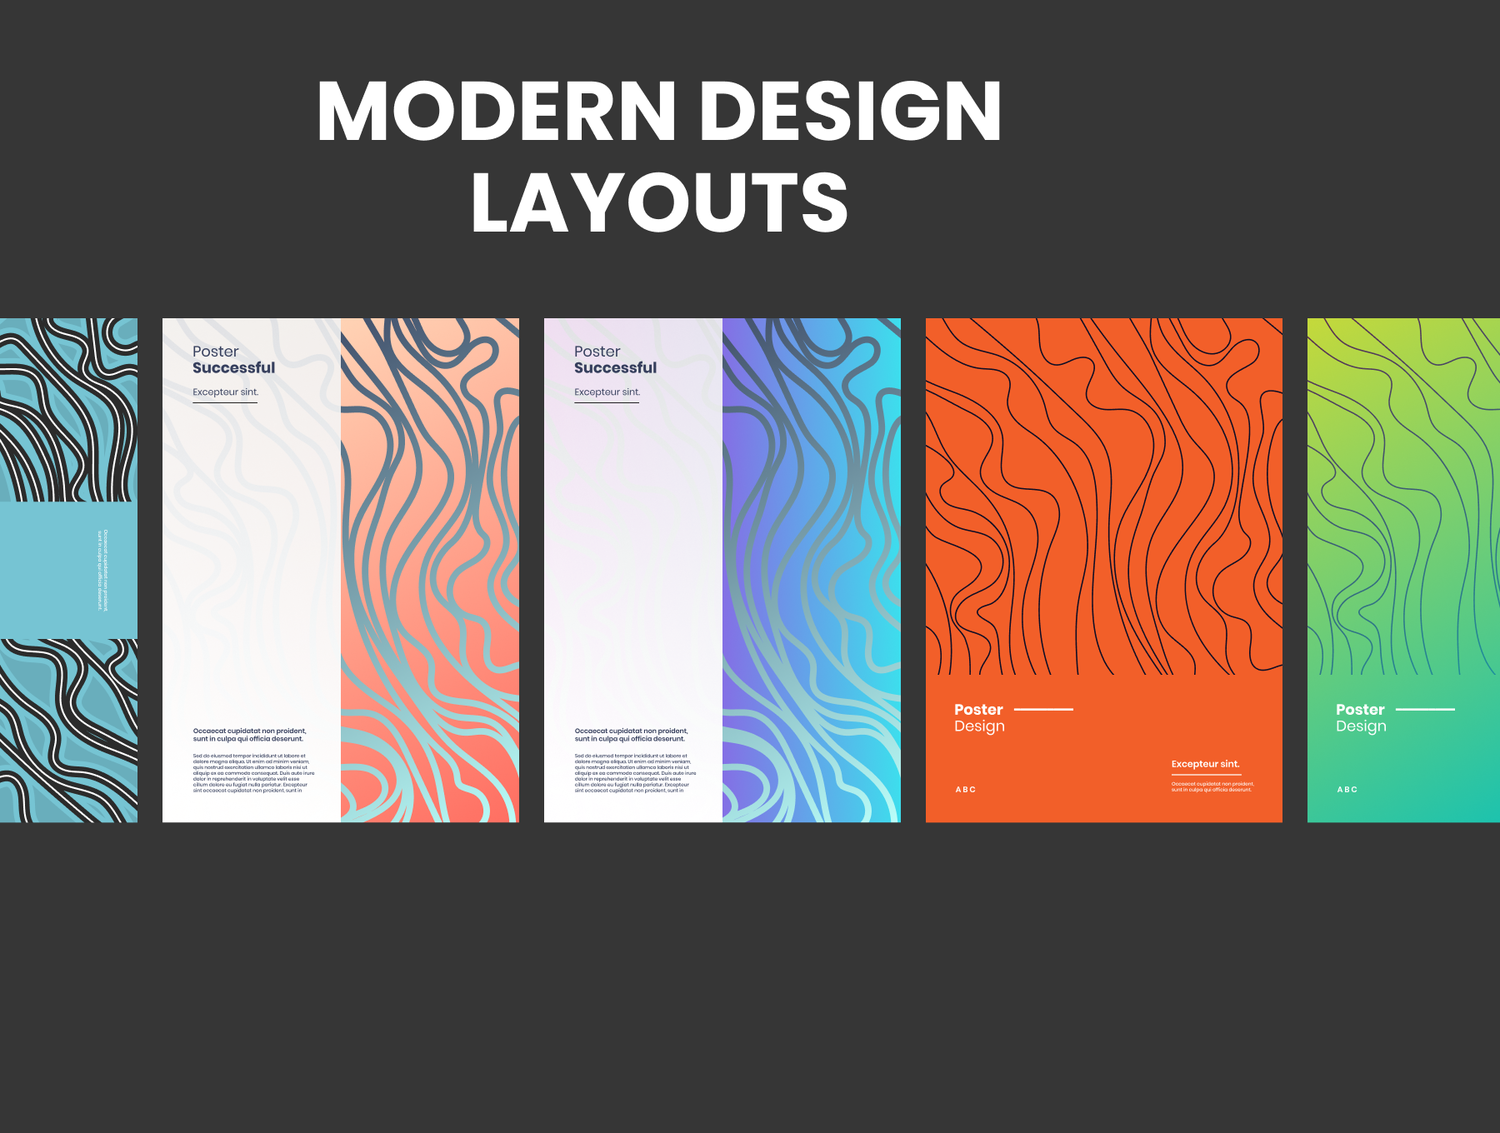 5132 抽象几何形状和平面海报设计模板素材 Geometric Design Elements Bundle@GOOODME.COM